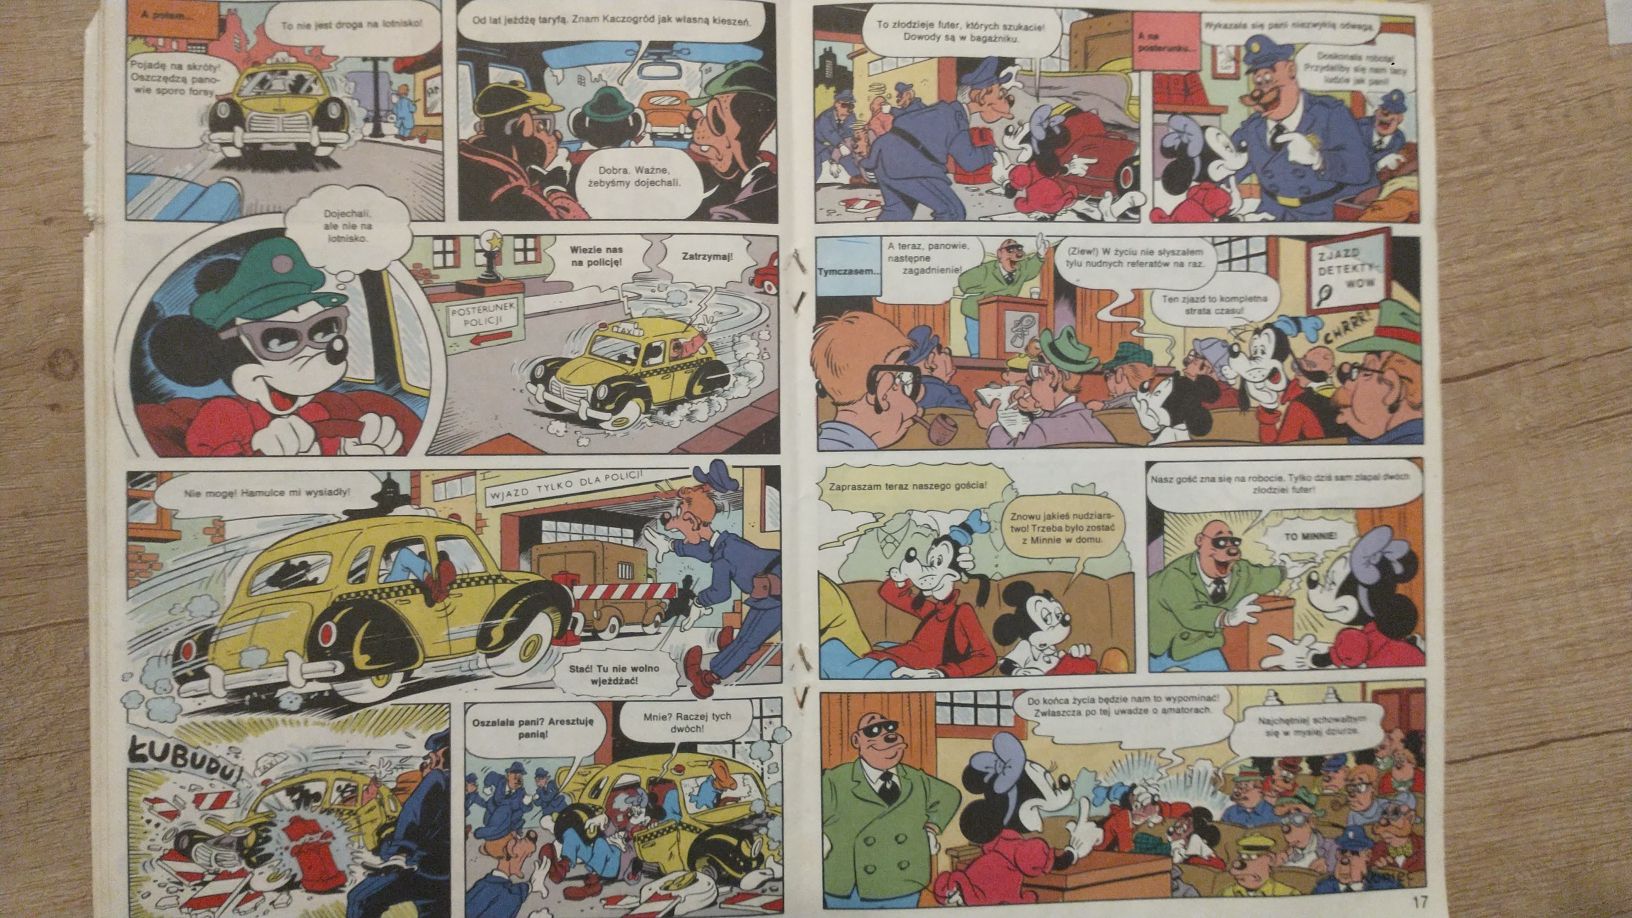 Mickey Mouse nr 5 1991 komiks lata 90 Myszka Miki